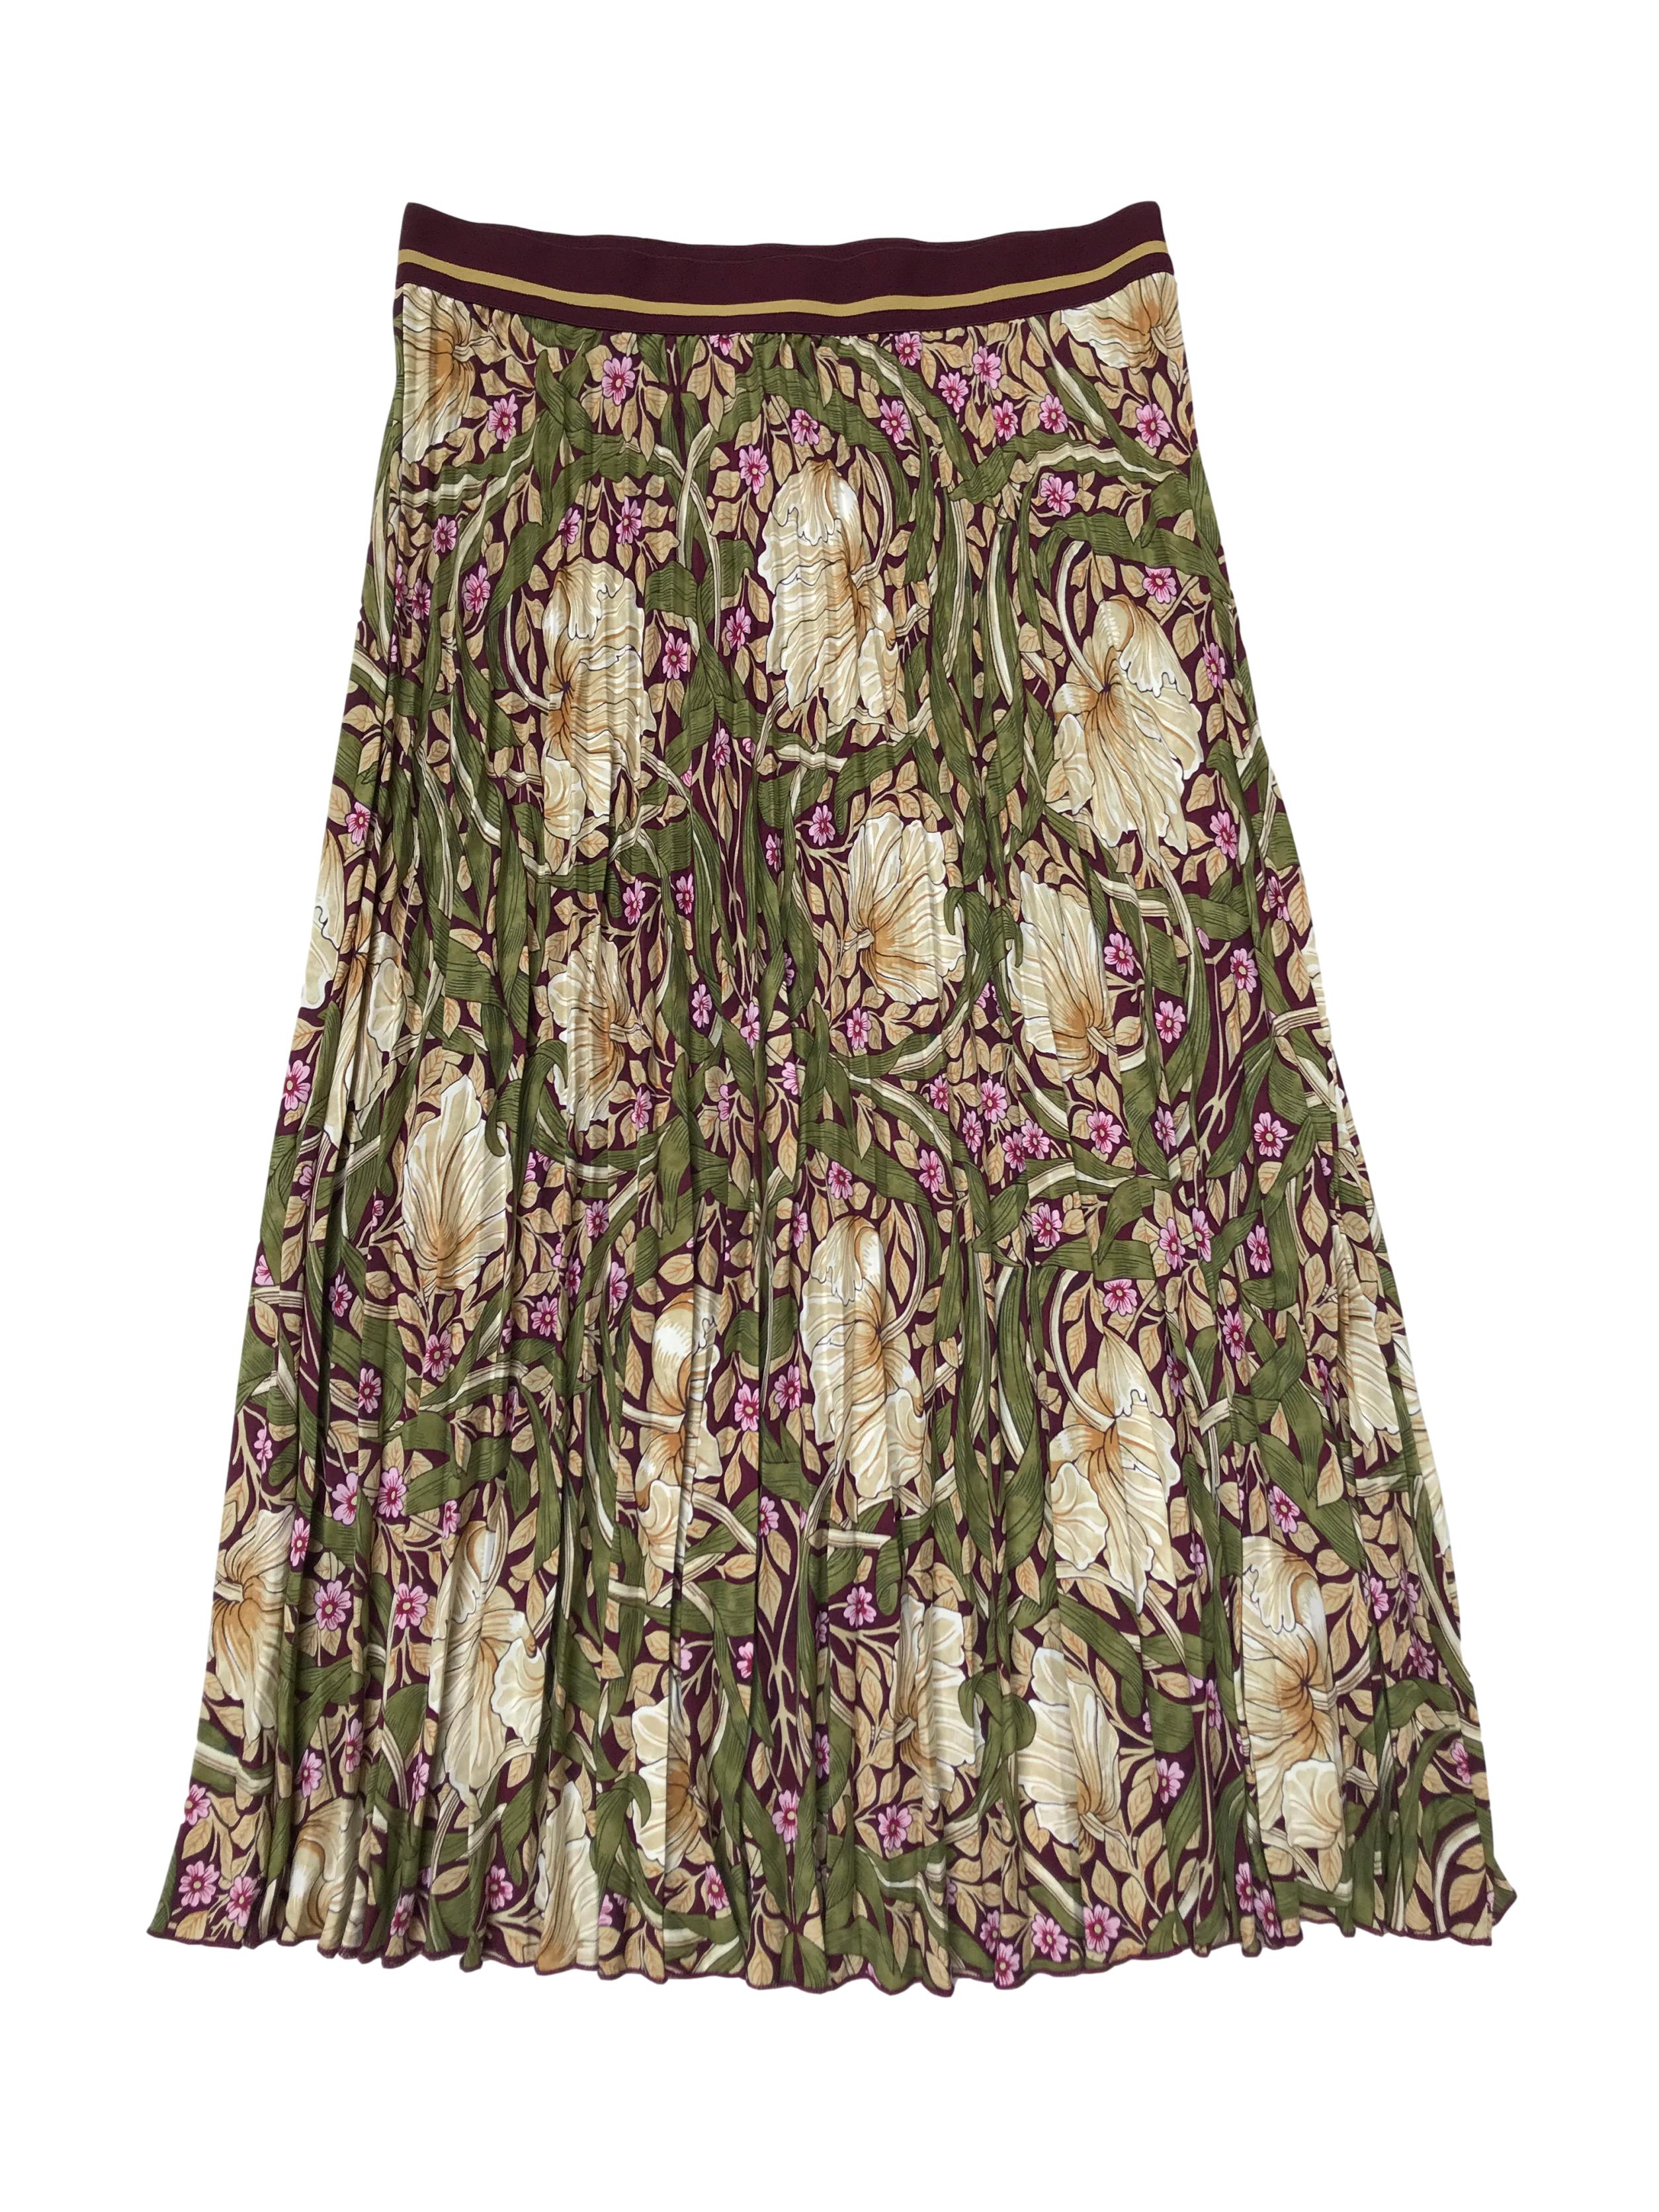 Falda midi plisada Morris&co x H&M, tela fluida delgada guinda con estampado de flores, pretina elástica. Cintura 75cm sin estirar Largo 80cm